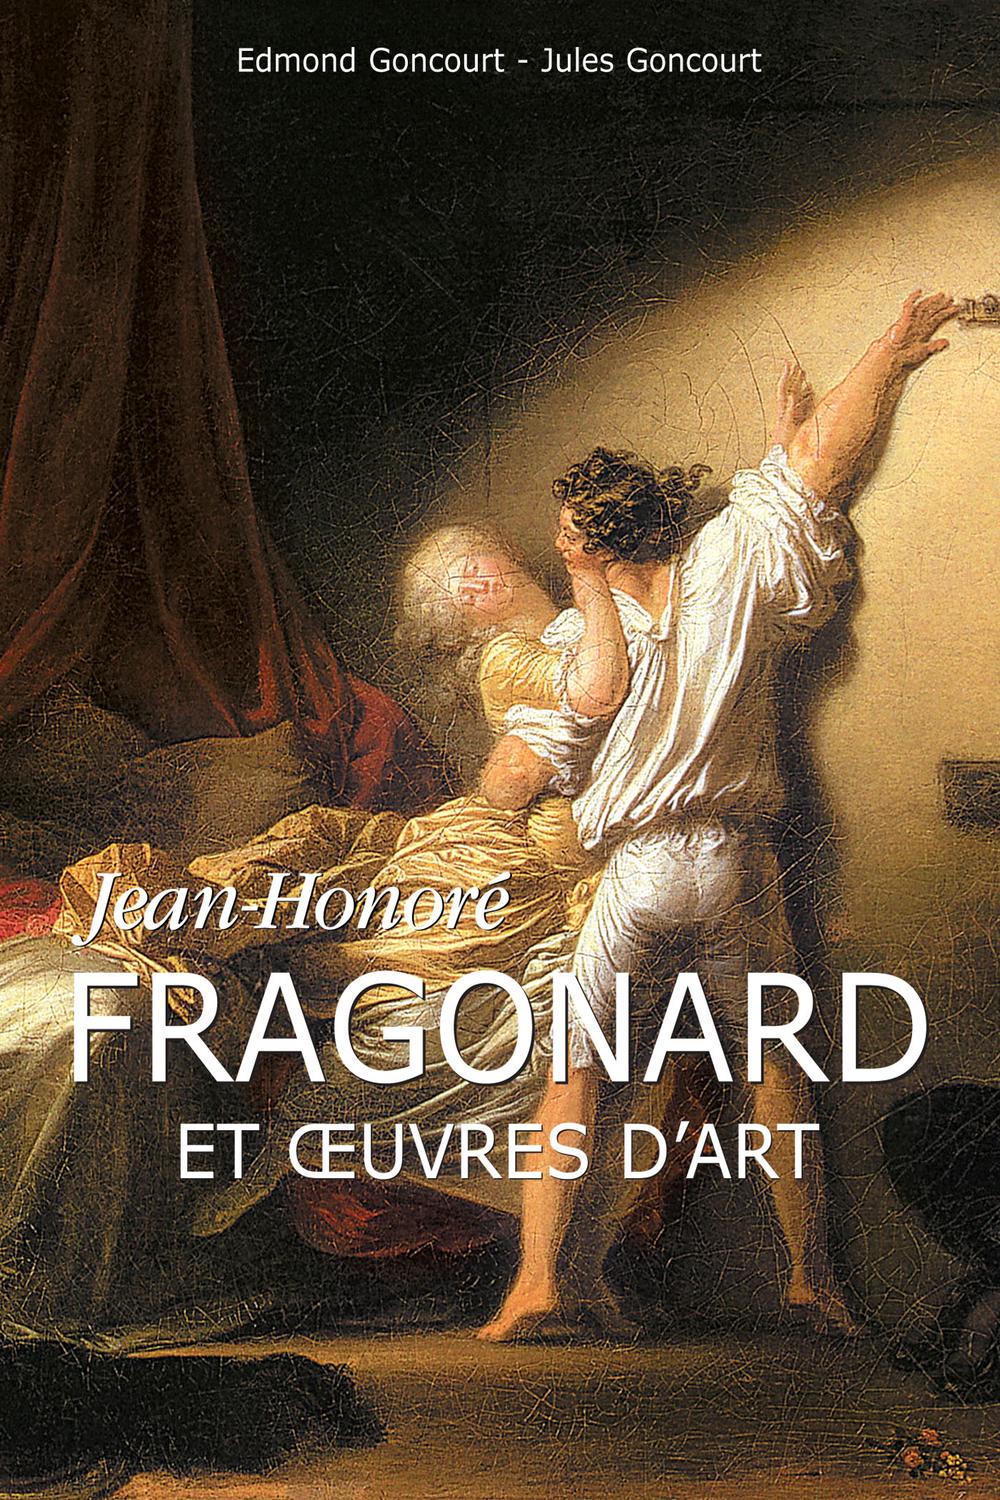 Jean-Honoré Fragonard et œuvres d'art - Edmond Goncourt, Jules Goncourt